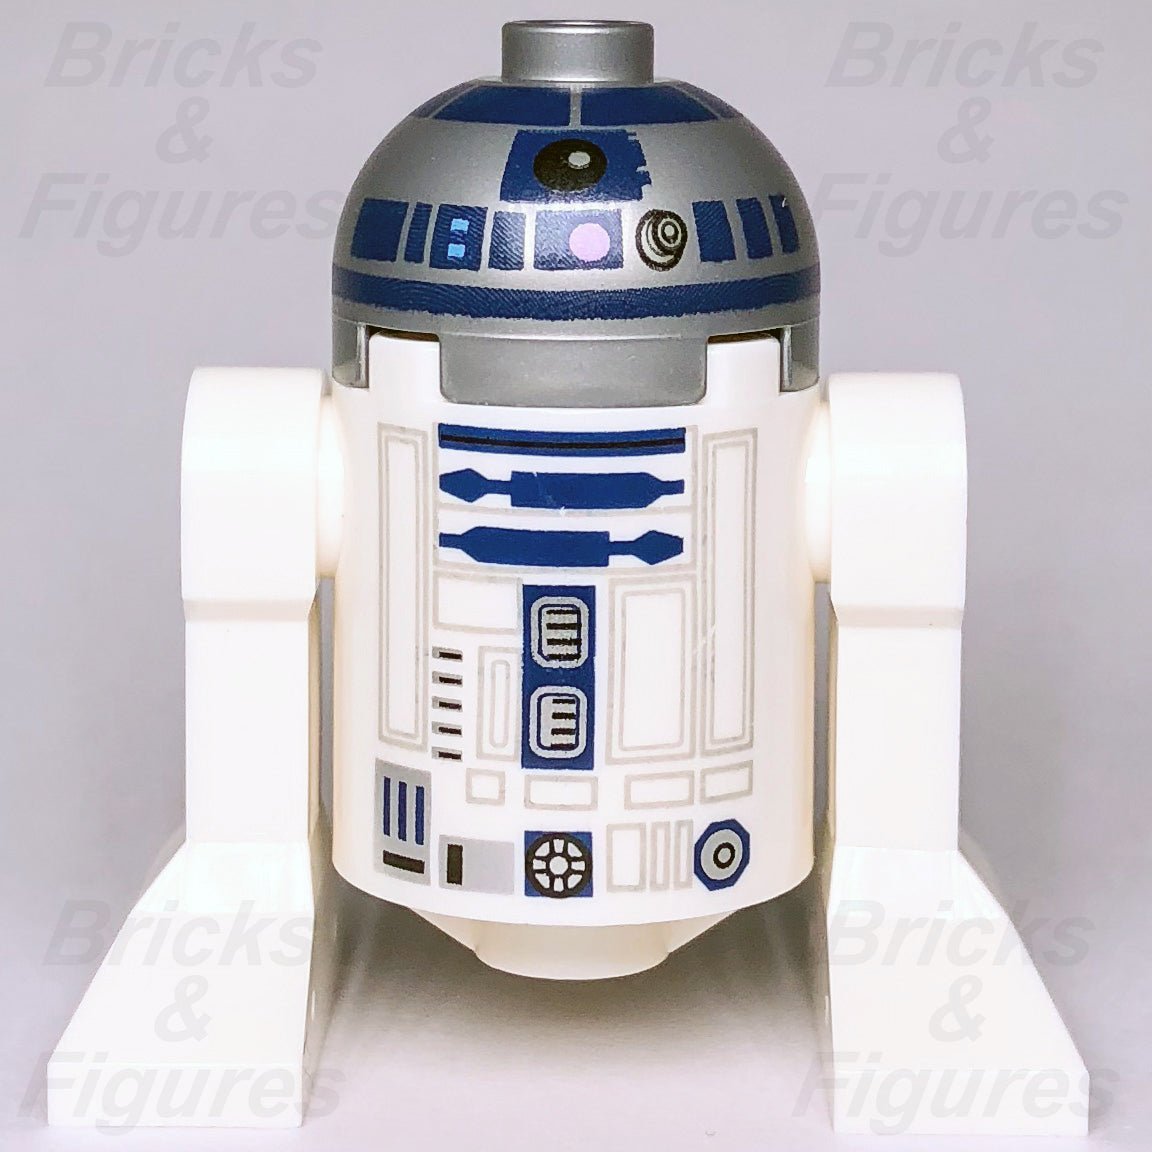 LEGO R2-D2 Minifigures